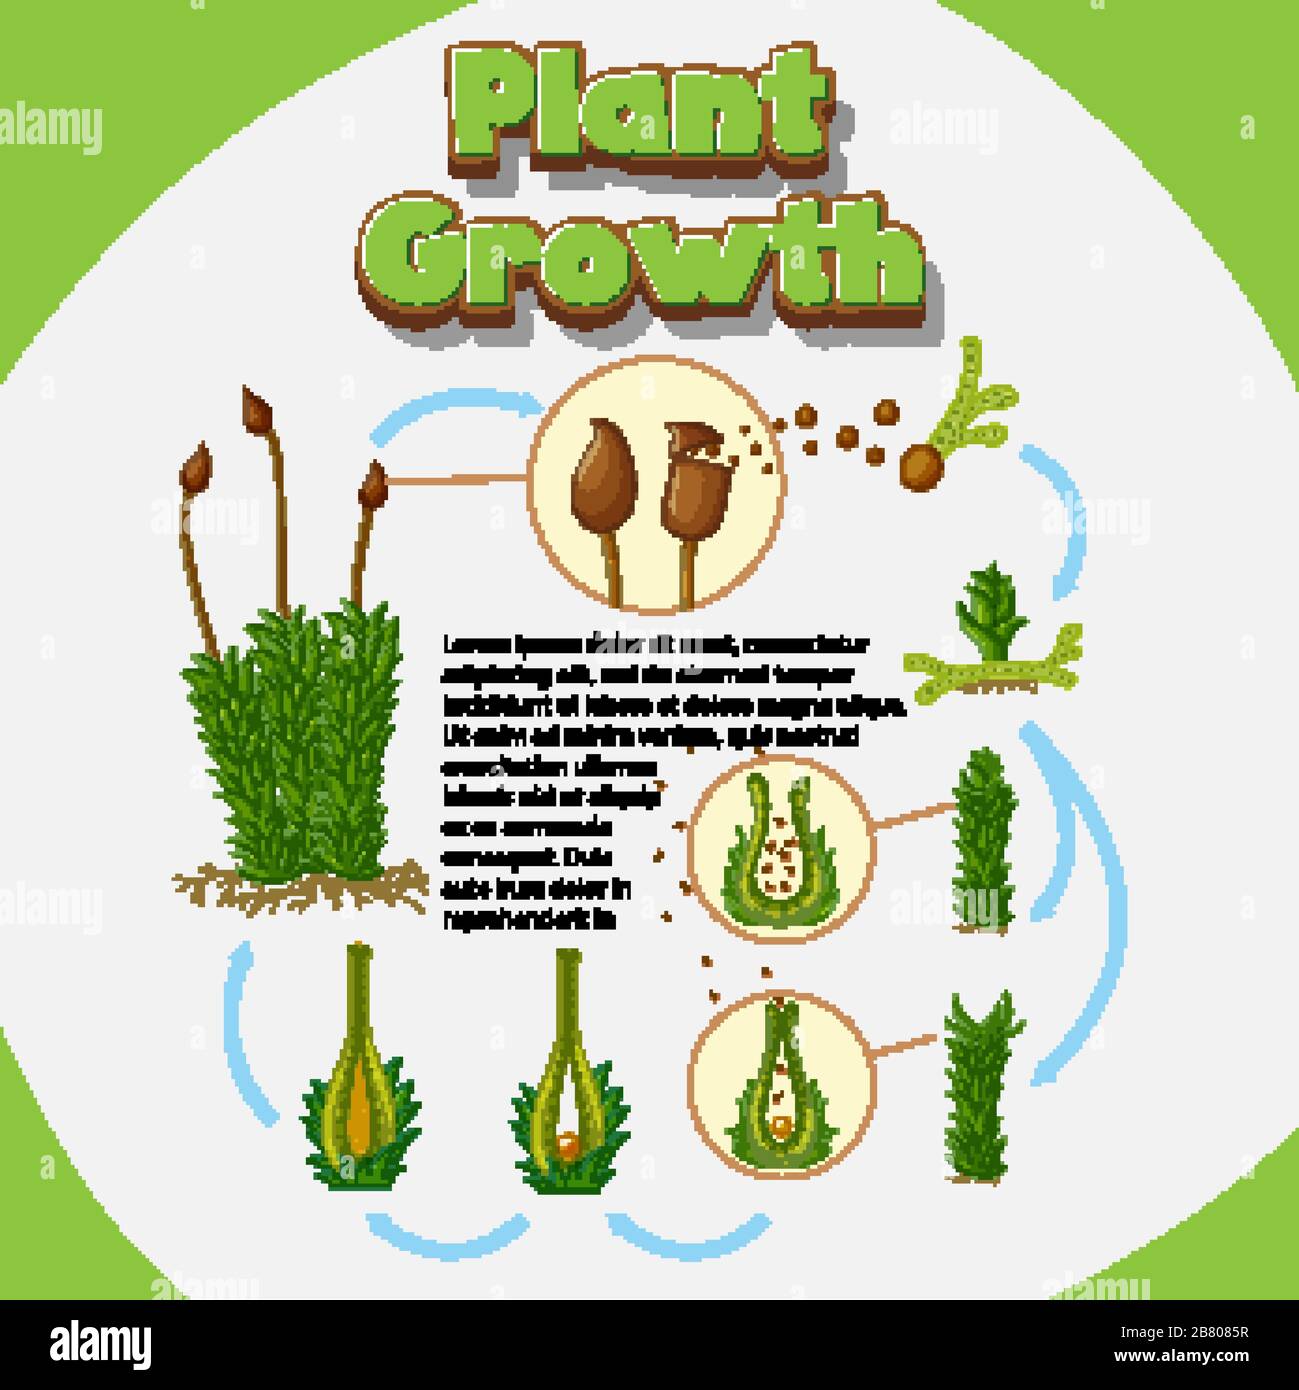 Diagramm, das zeigt, wie Pflanzen aus Samen wachsen, Abbildung Stock Vektor